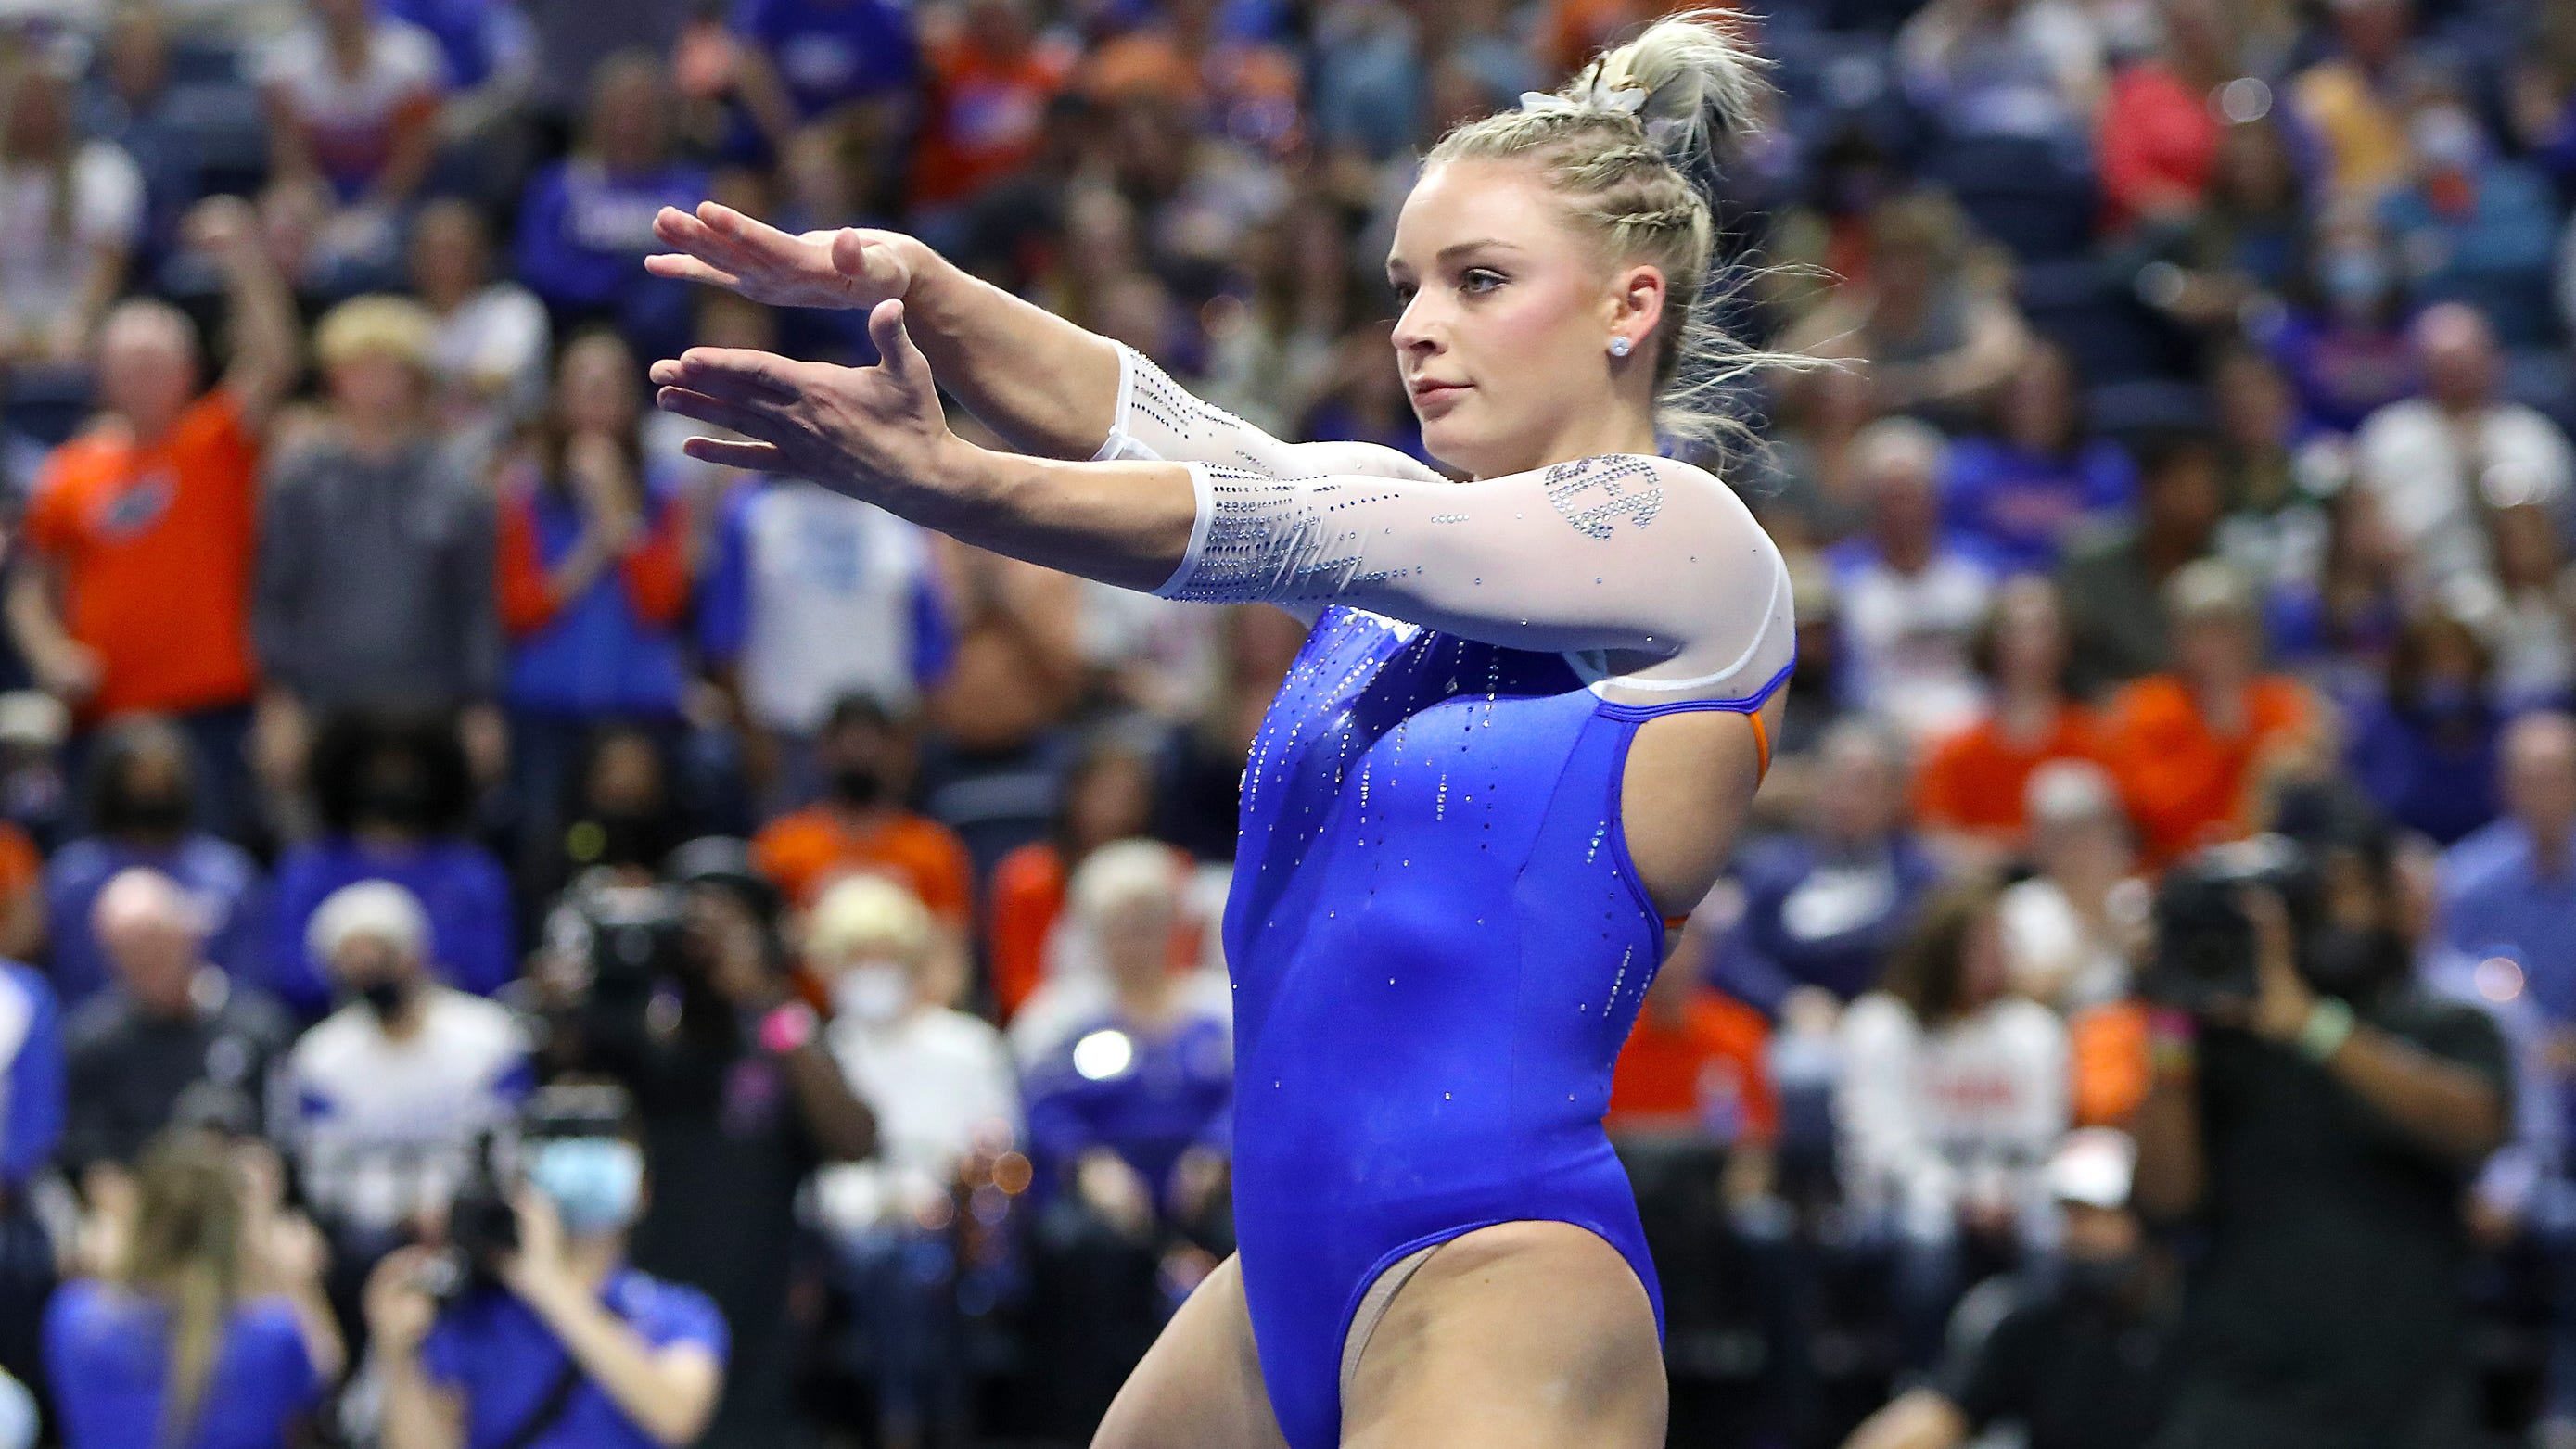 Florida gymnastics: Alyssa Baumann to end her UF career in her hometown